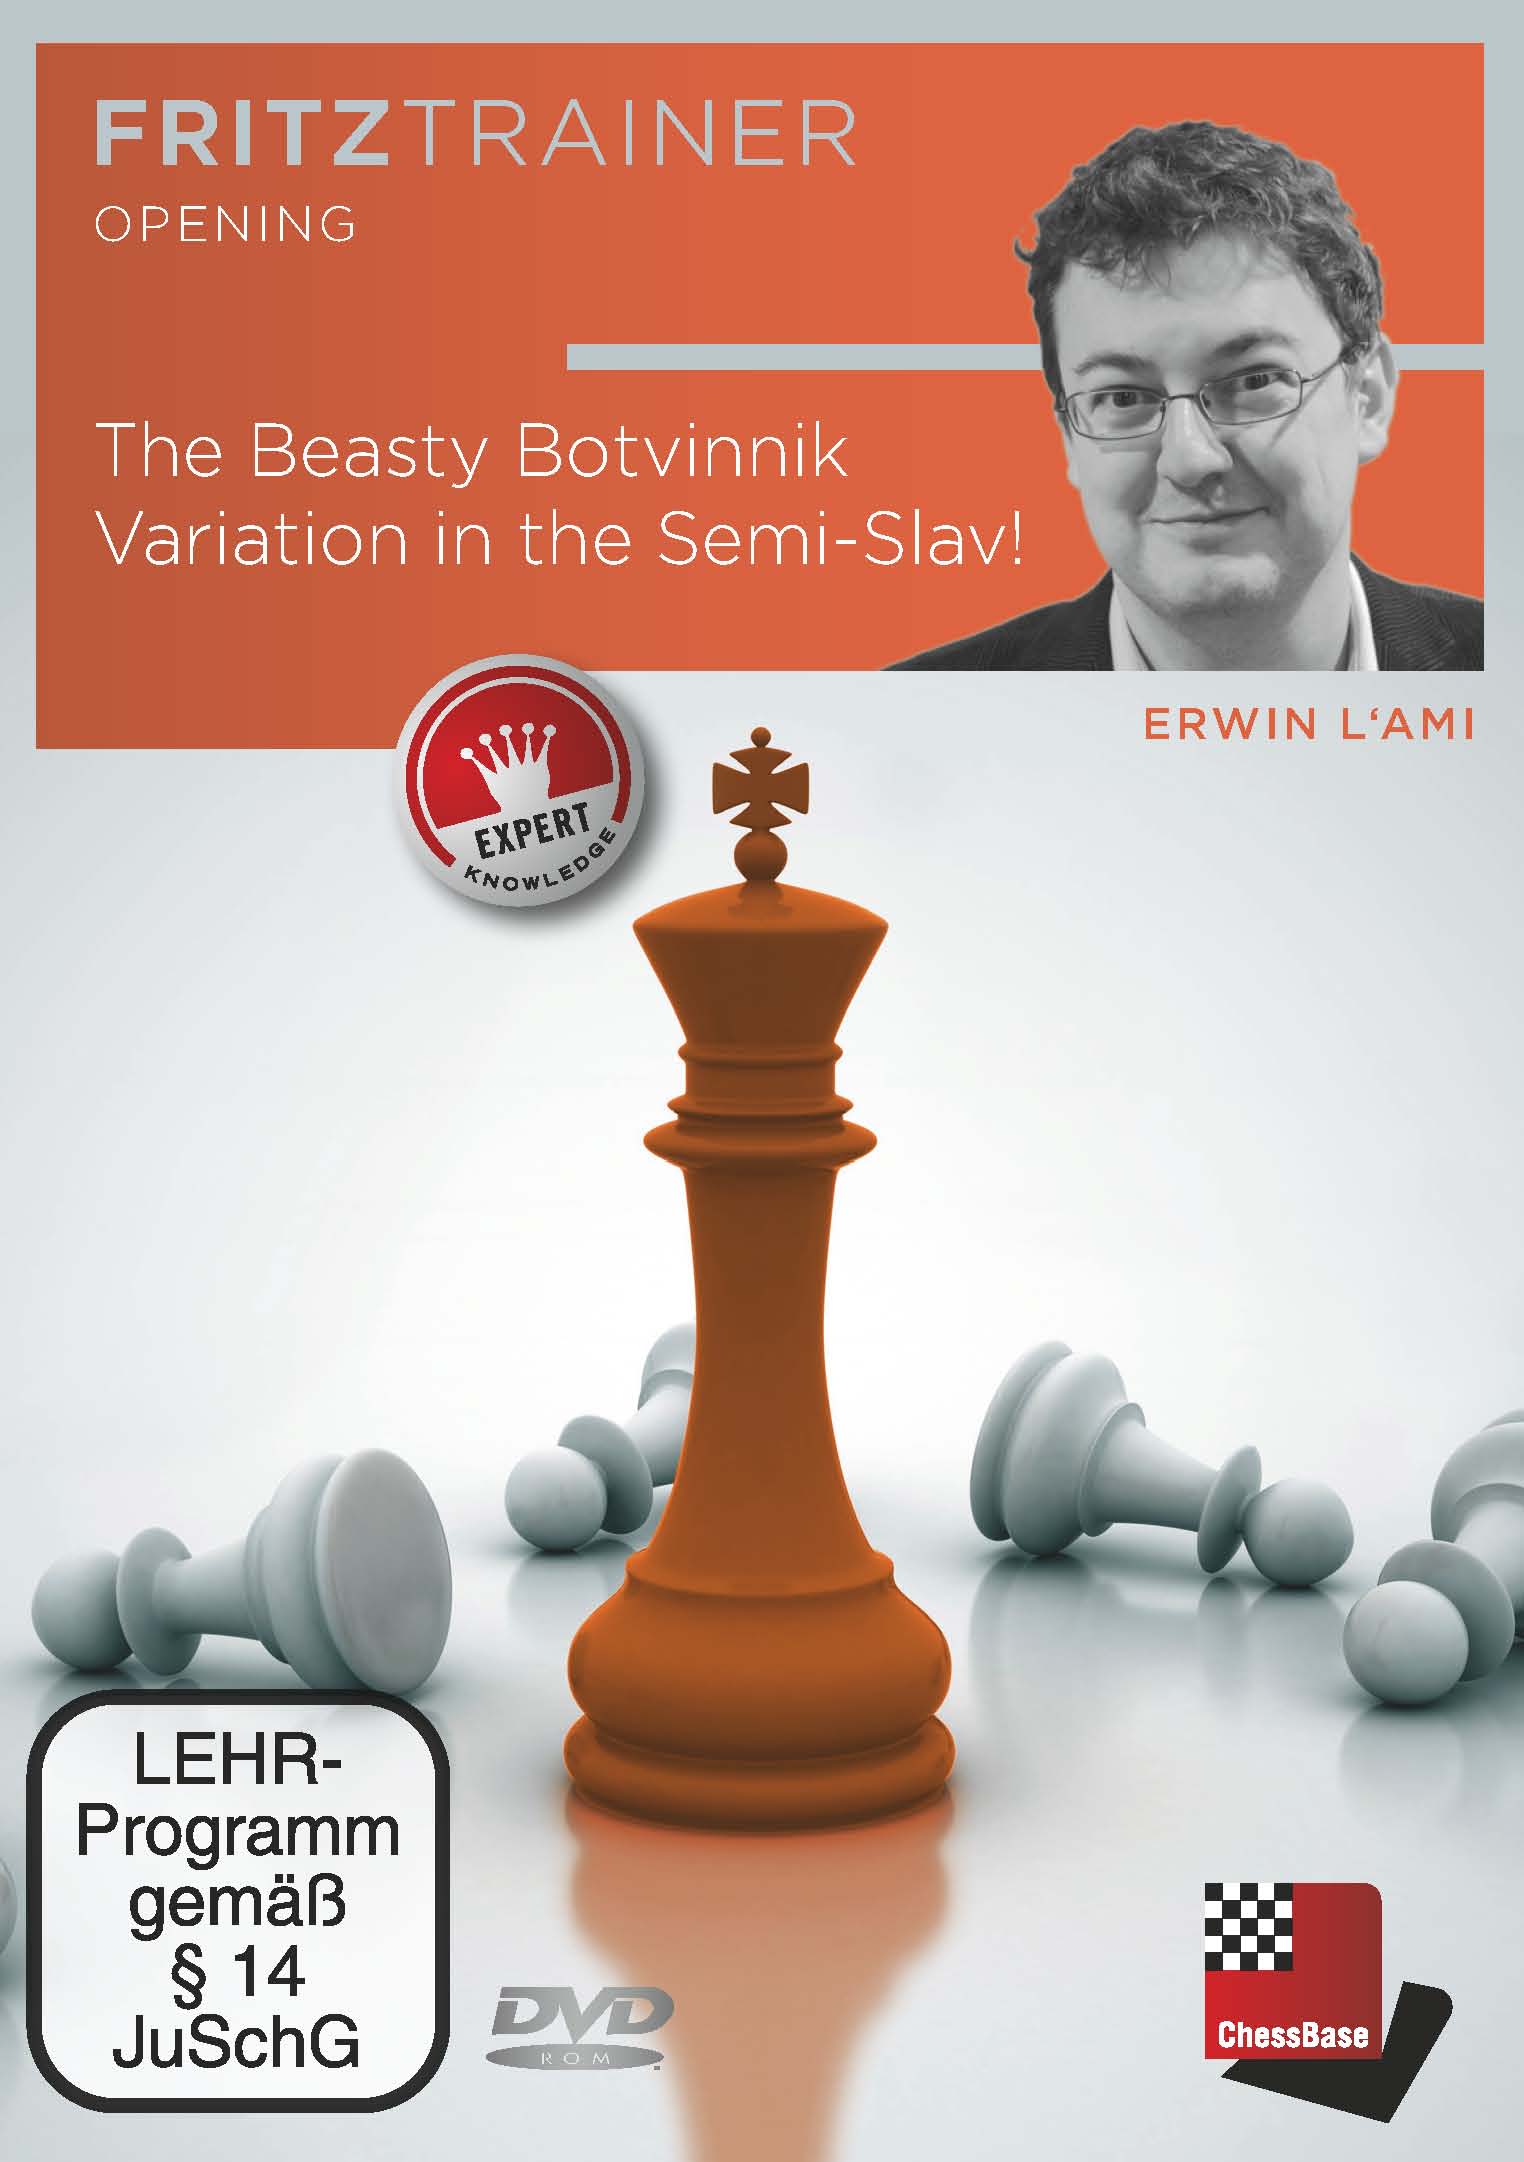 The Beasty Botvinnik Variation in the Semi-Slav!